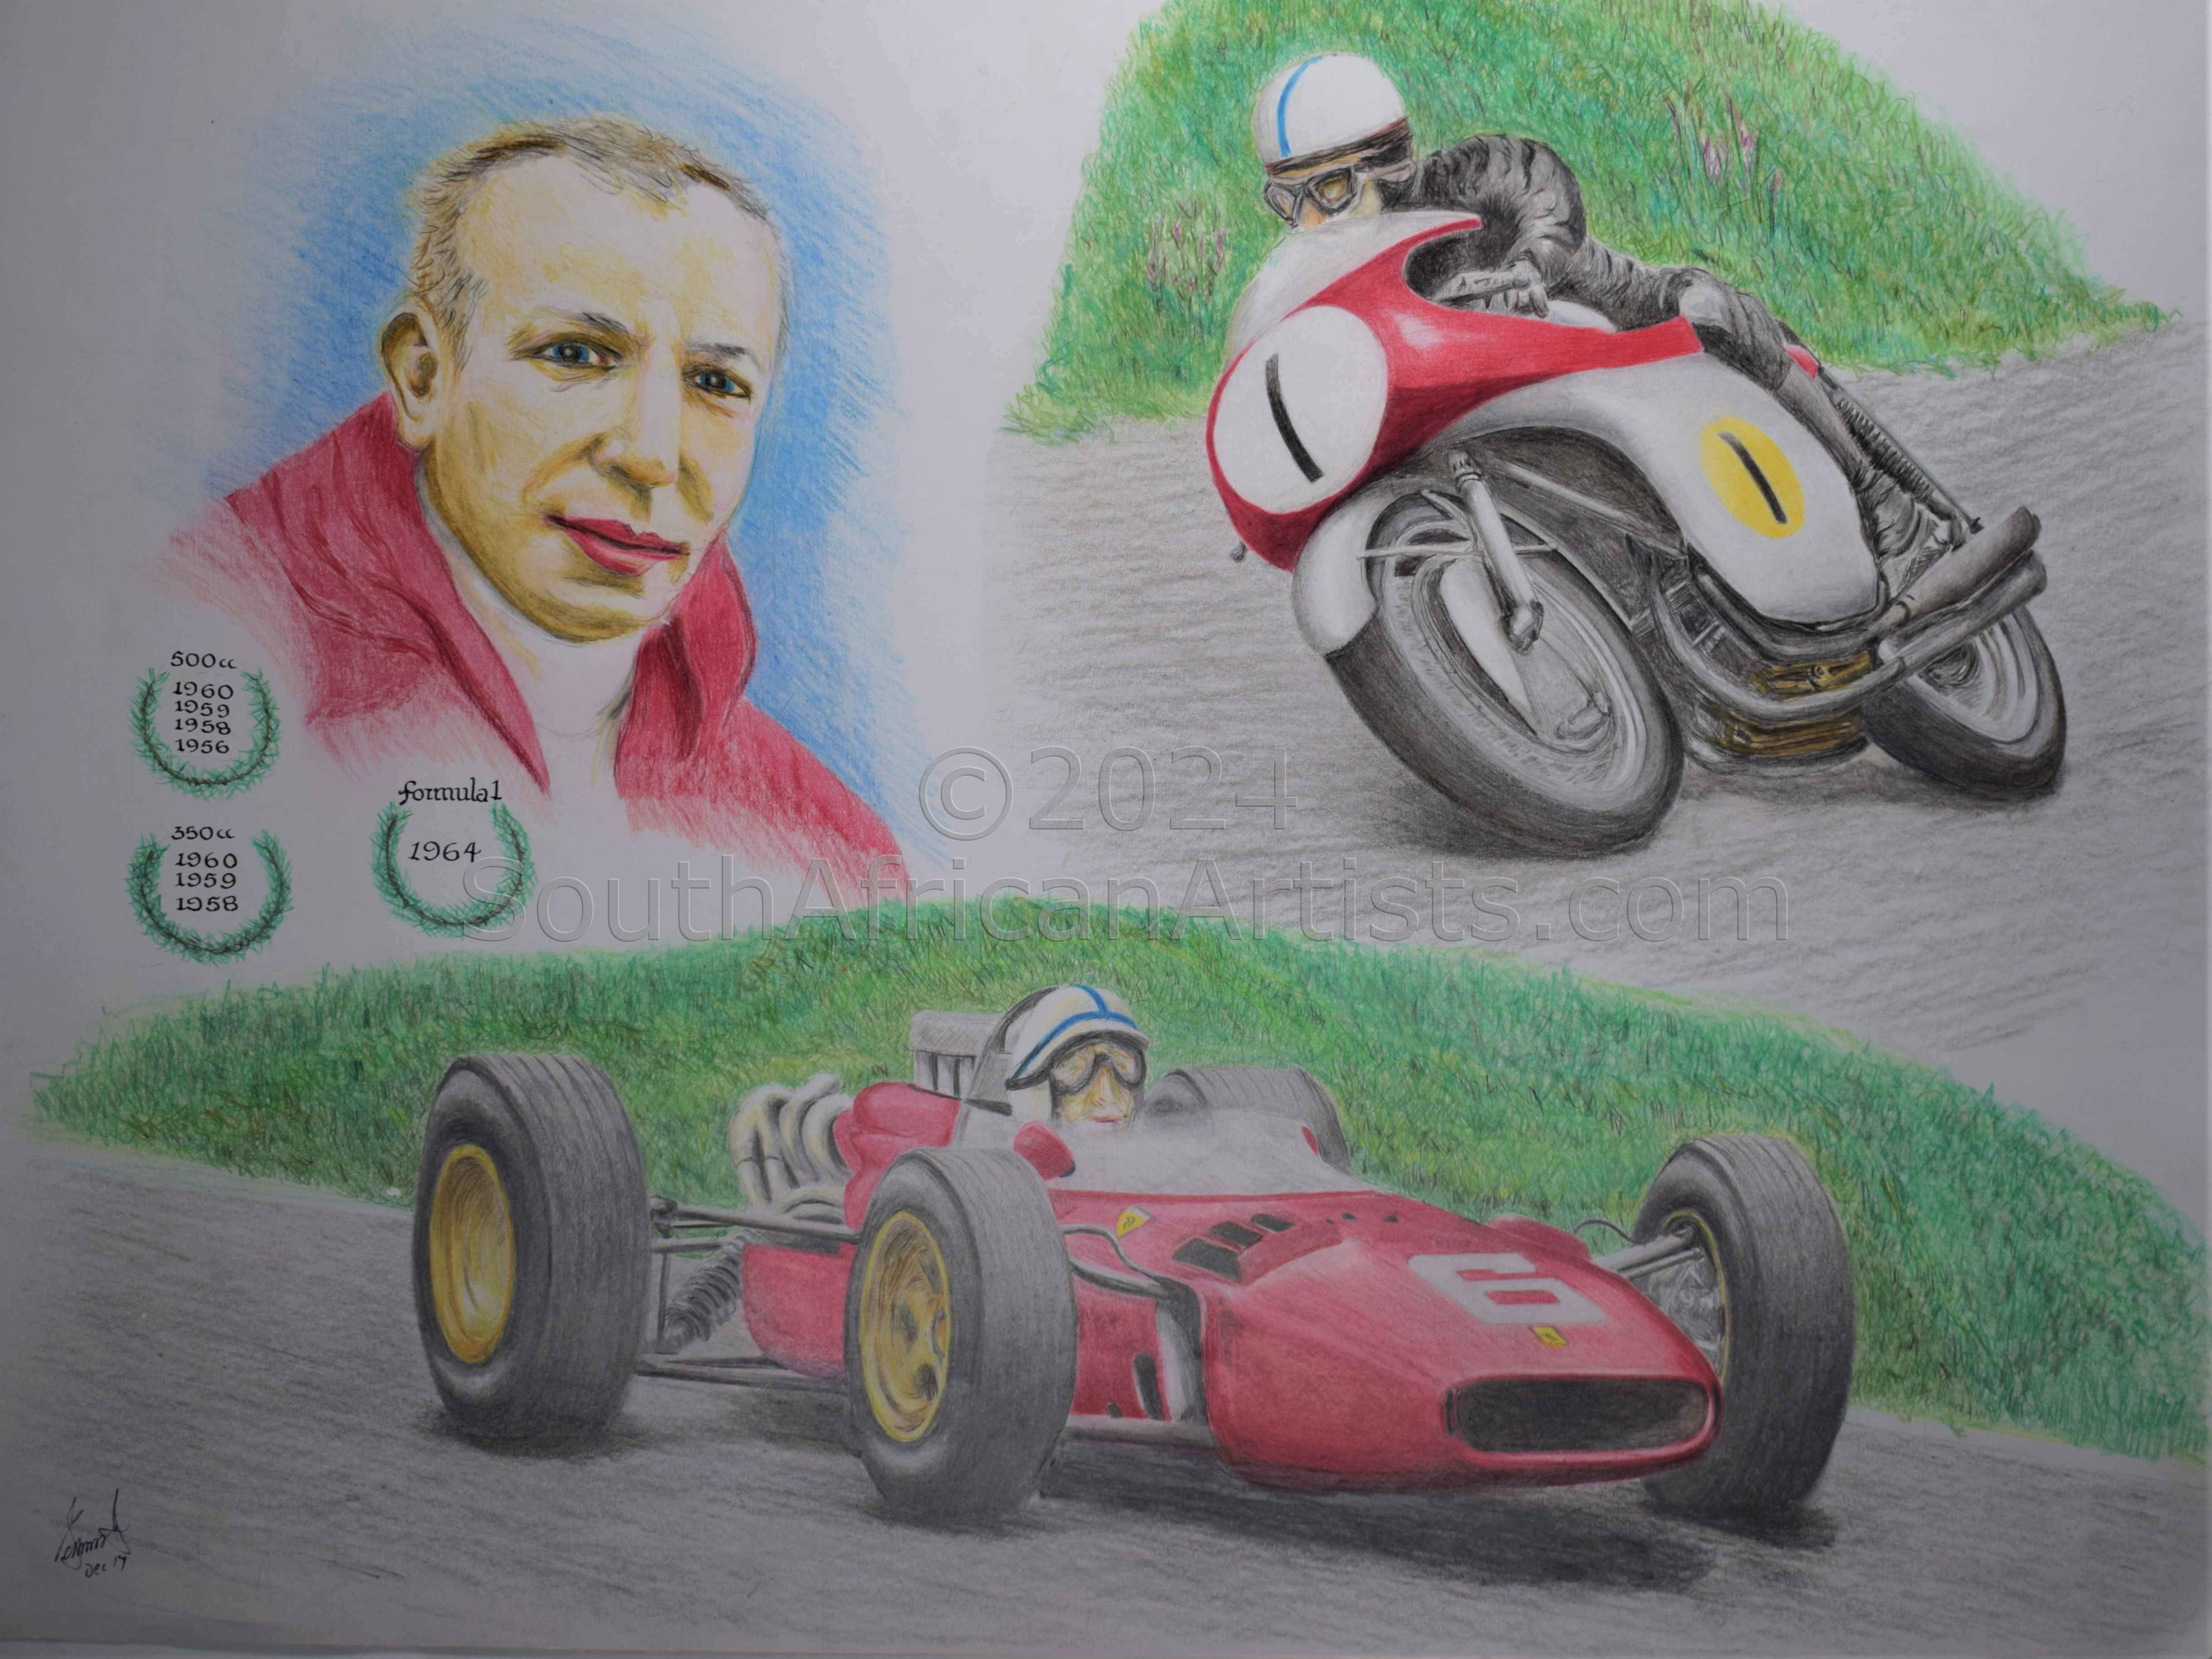 Tribute to Sir John Surtees